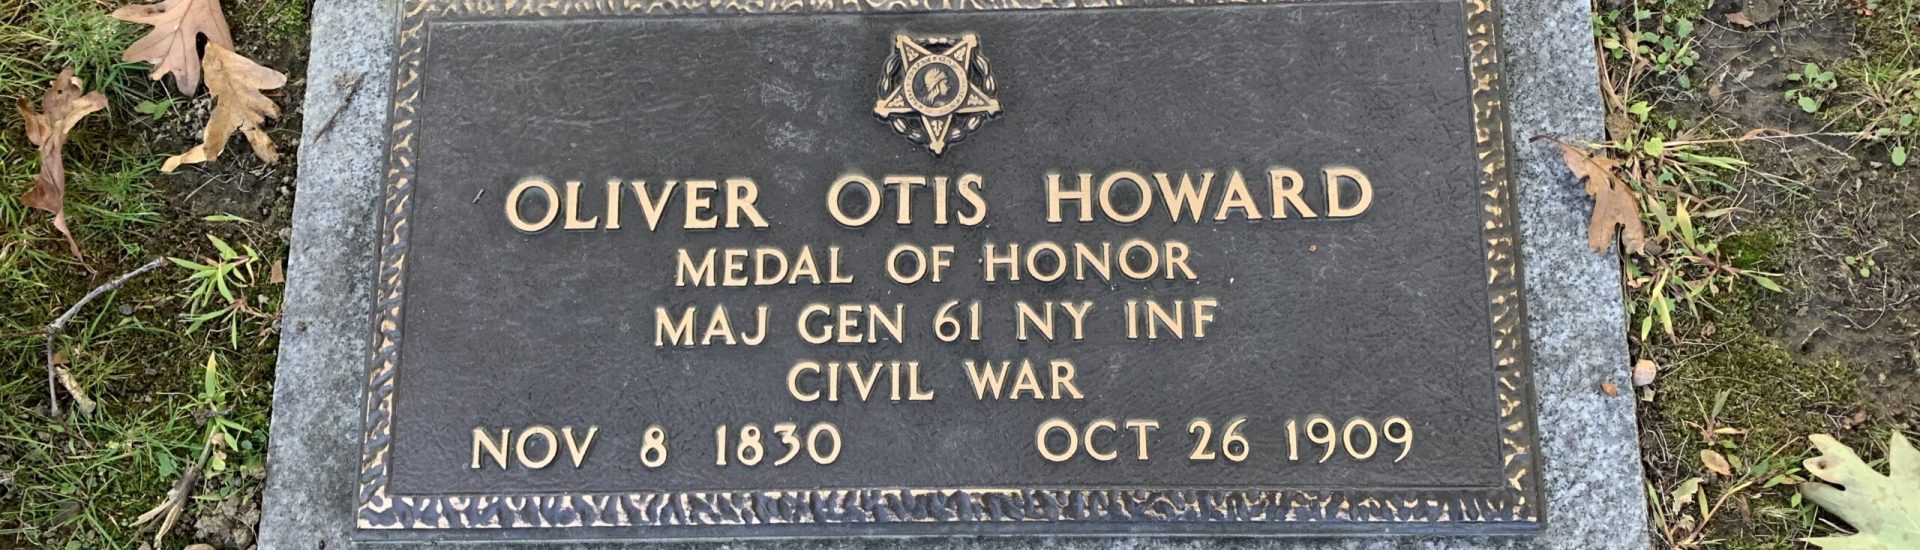 Oliver Otis Howard